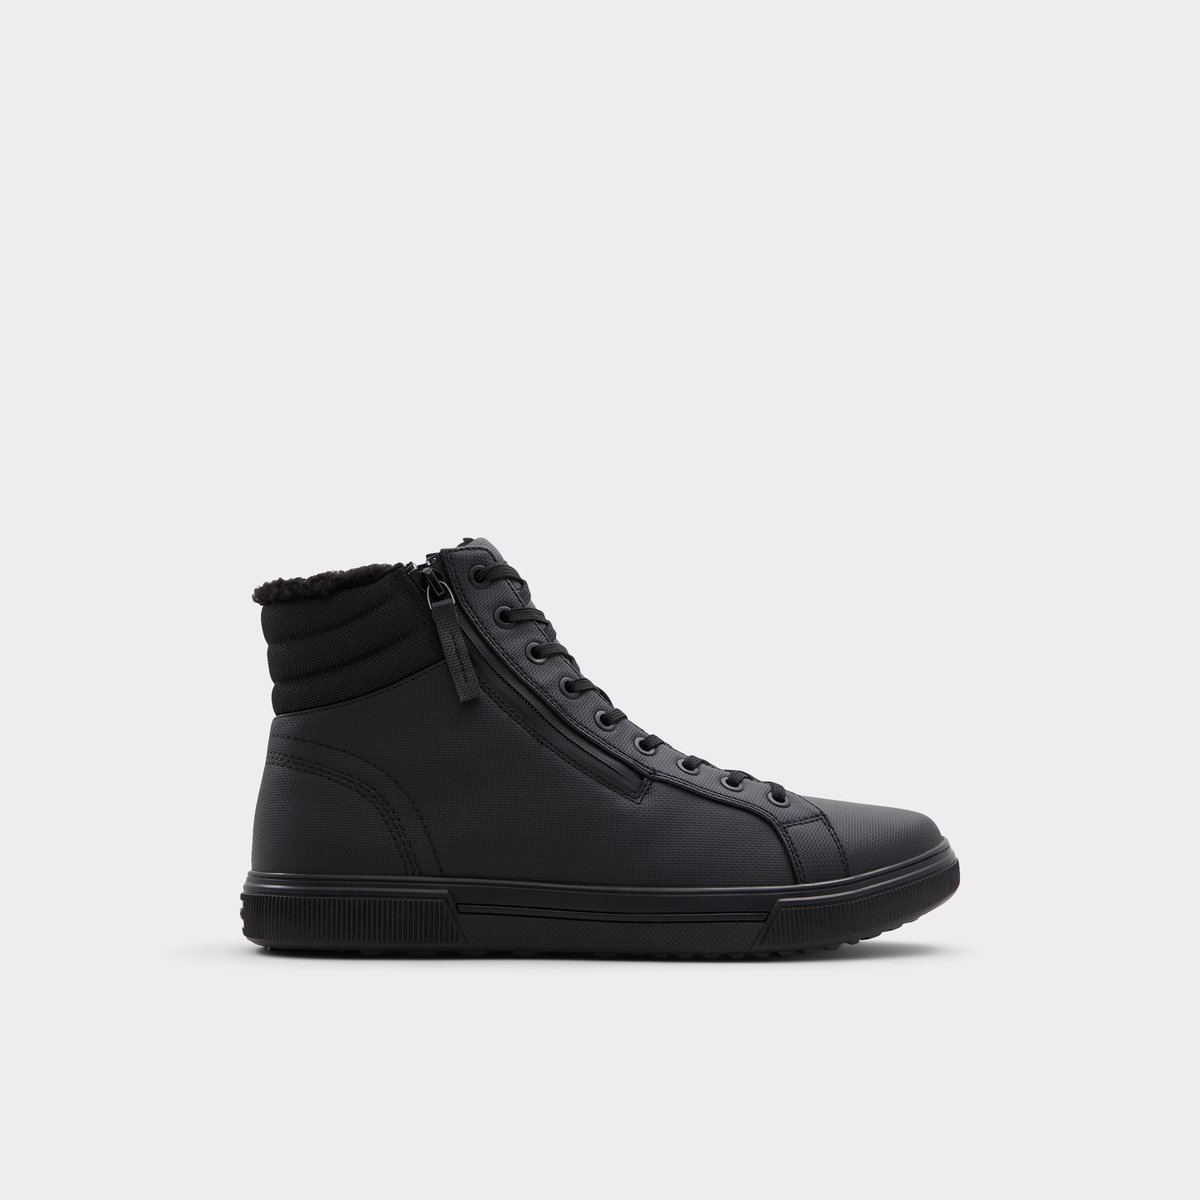 Aldo Preralithh Men's Boots Other Black : EU 46 (US Men's 13) D - Medium